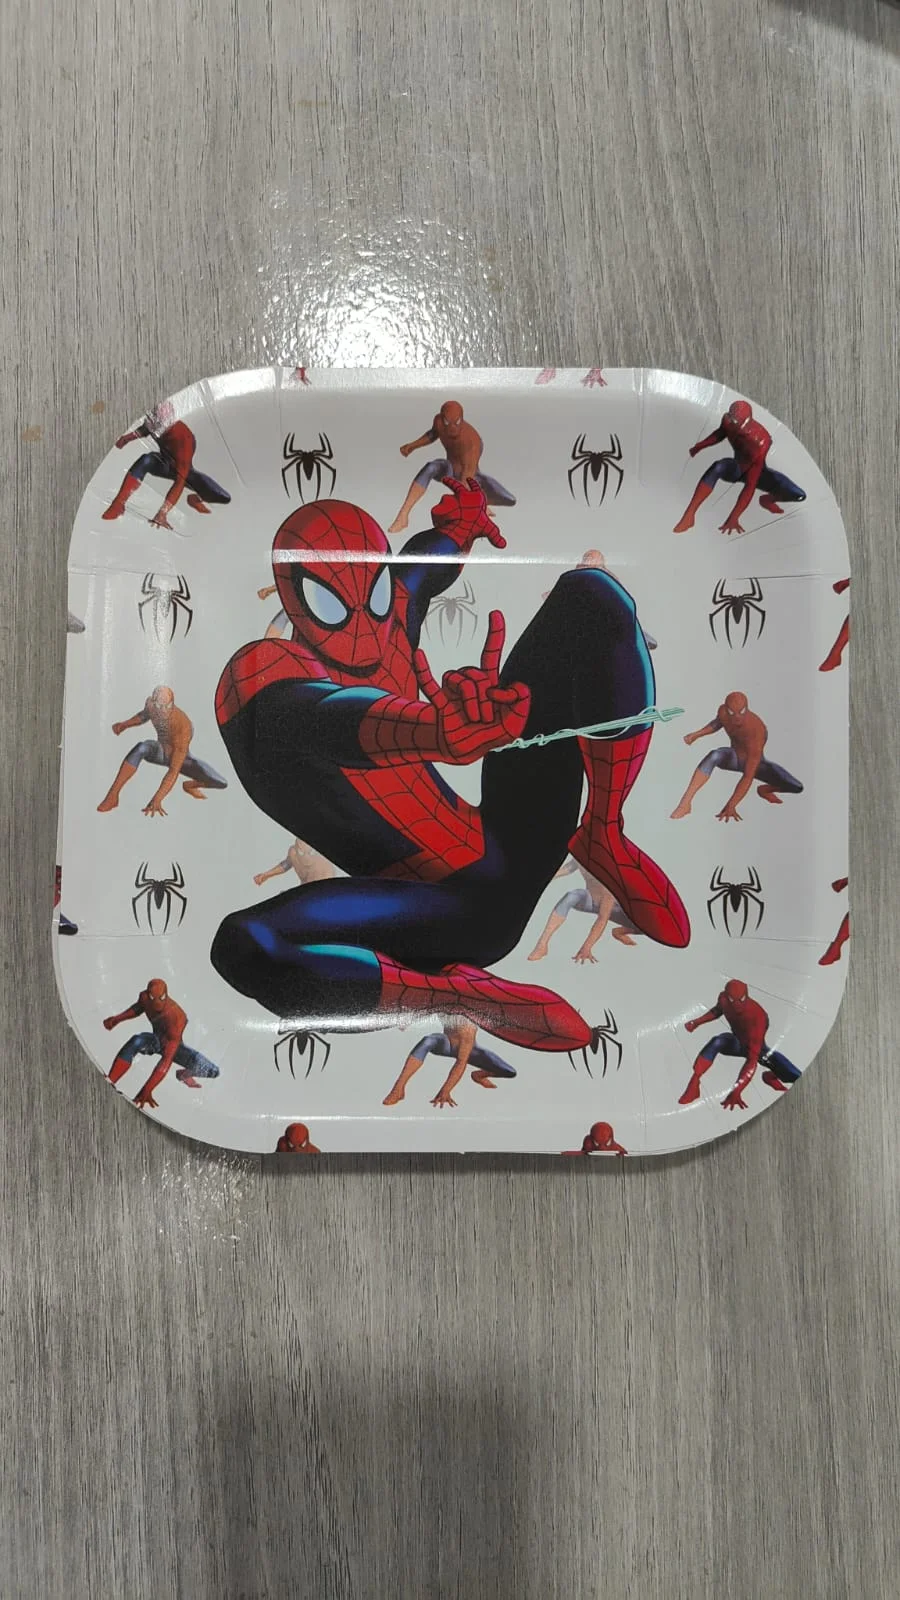 طبق كرتون مربعة شكل سبايدر مان 10 اطباق Spiderman square plate